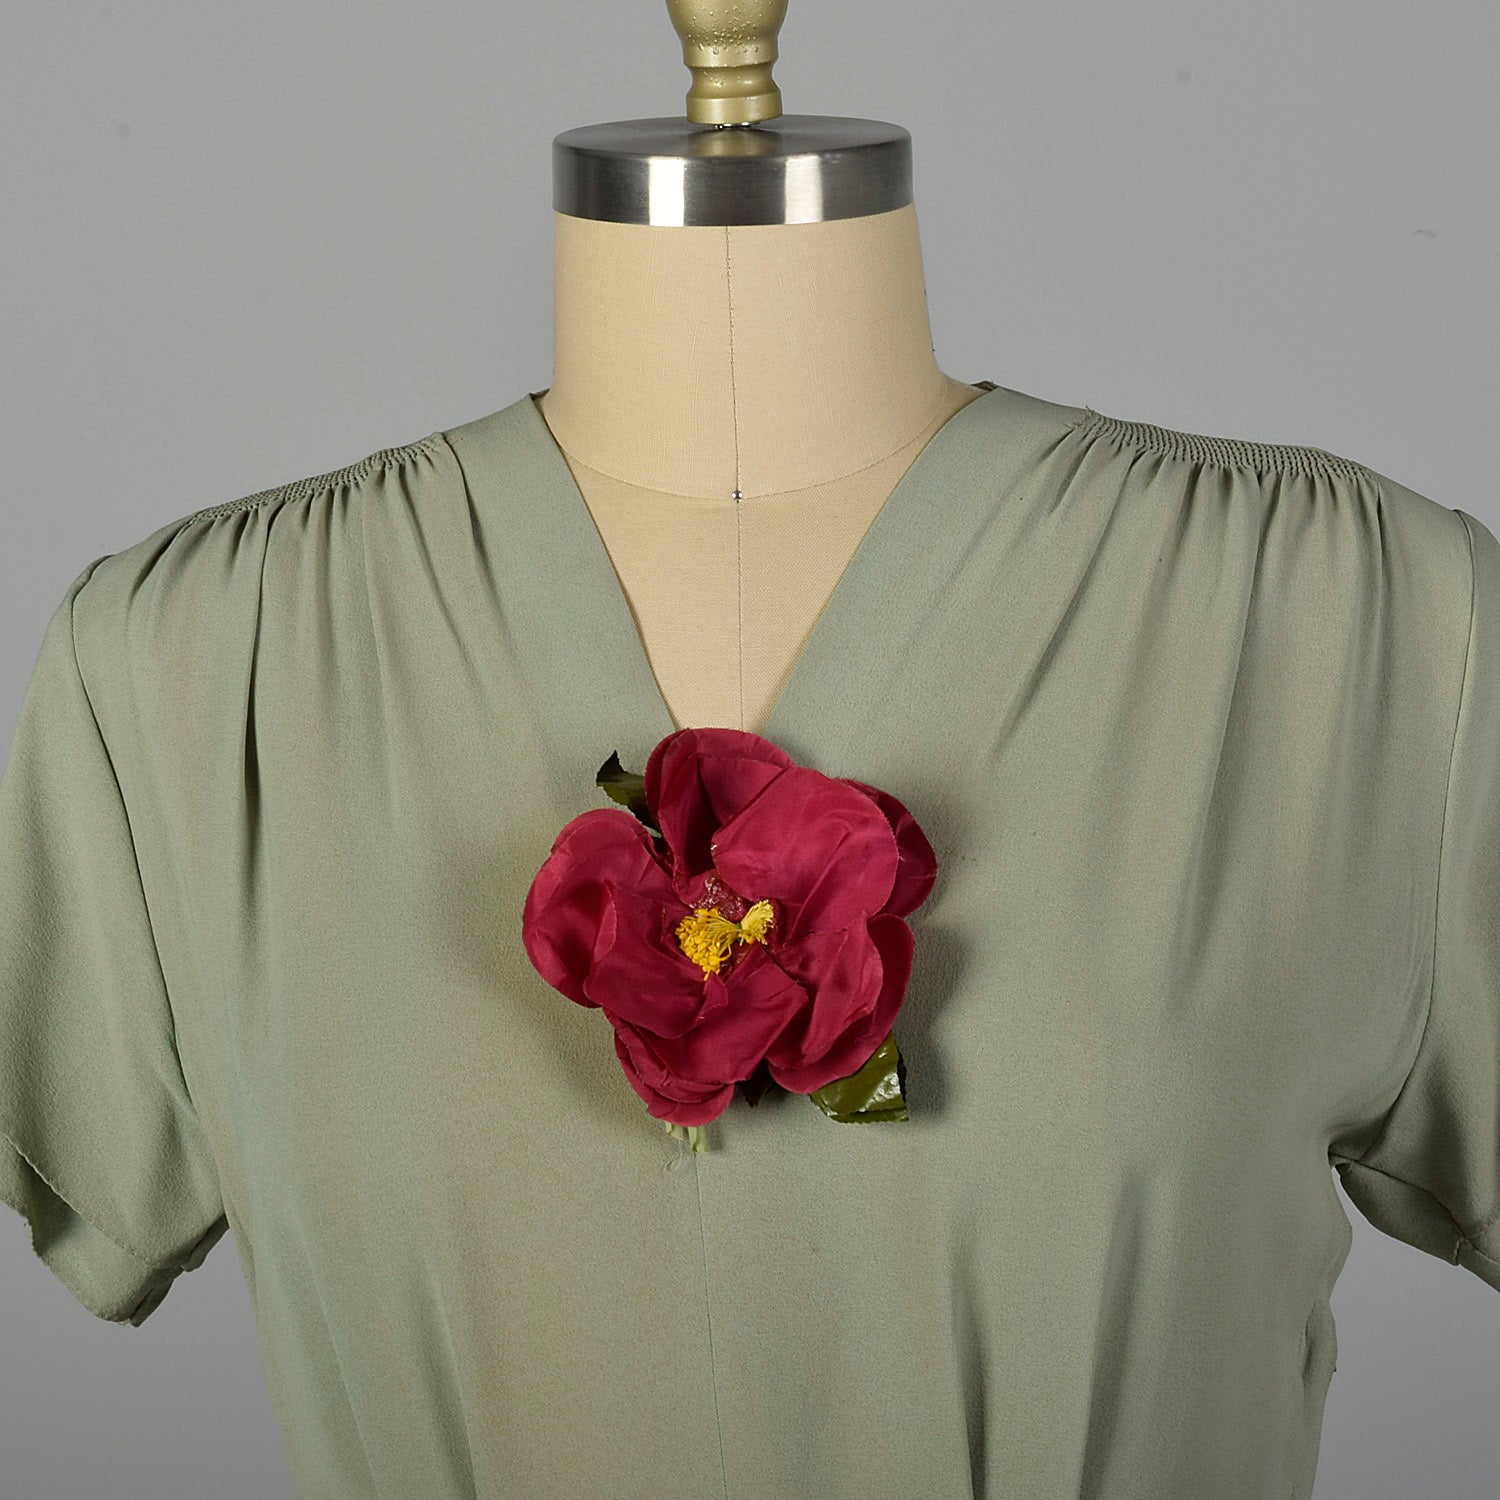 XXL 1940s Green Long Dress